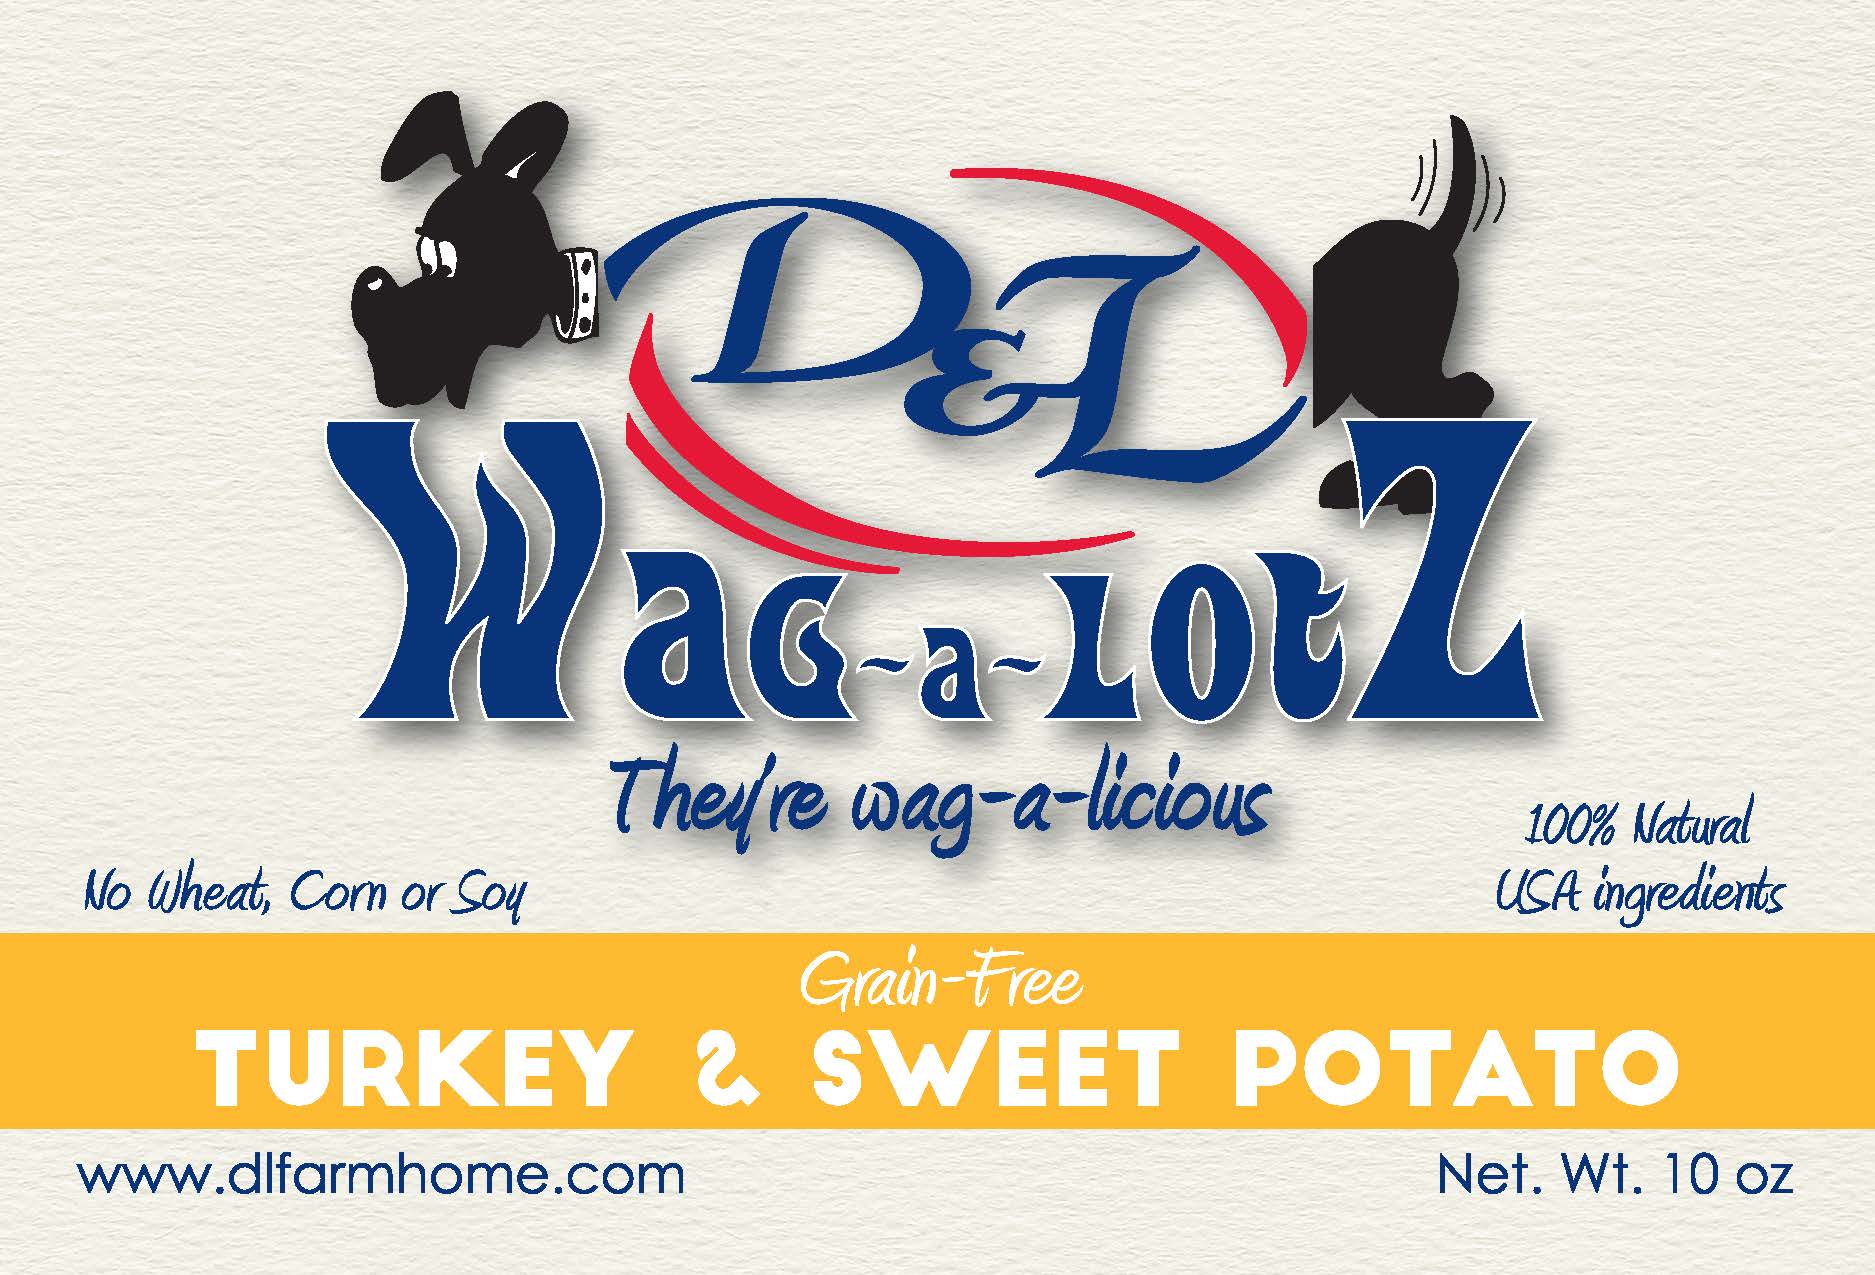 D&L Wag-a-Lotz Grain Free Turkey & Sweet Potato Dog Treats, 10 oz